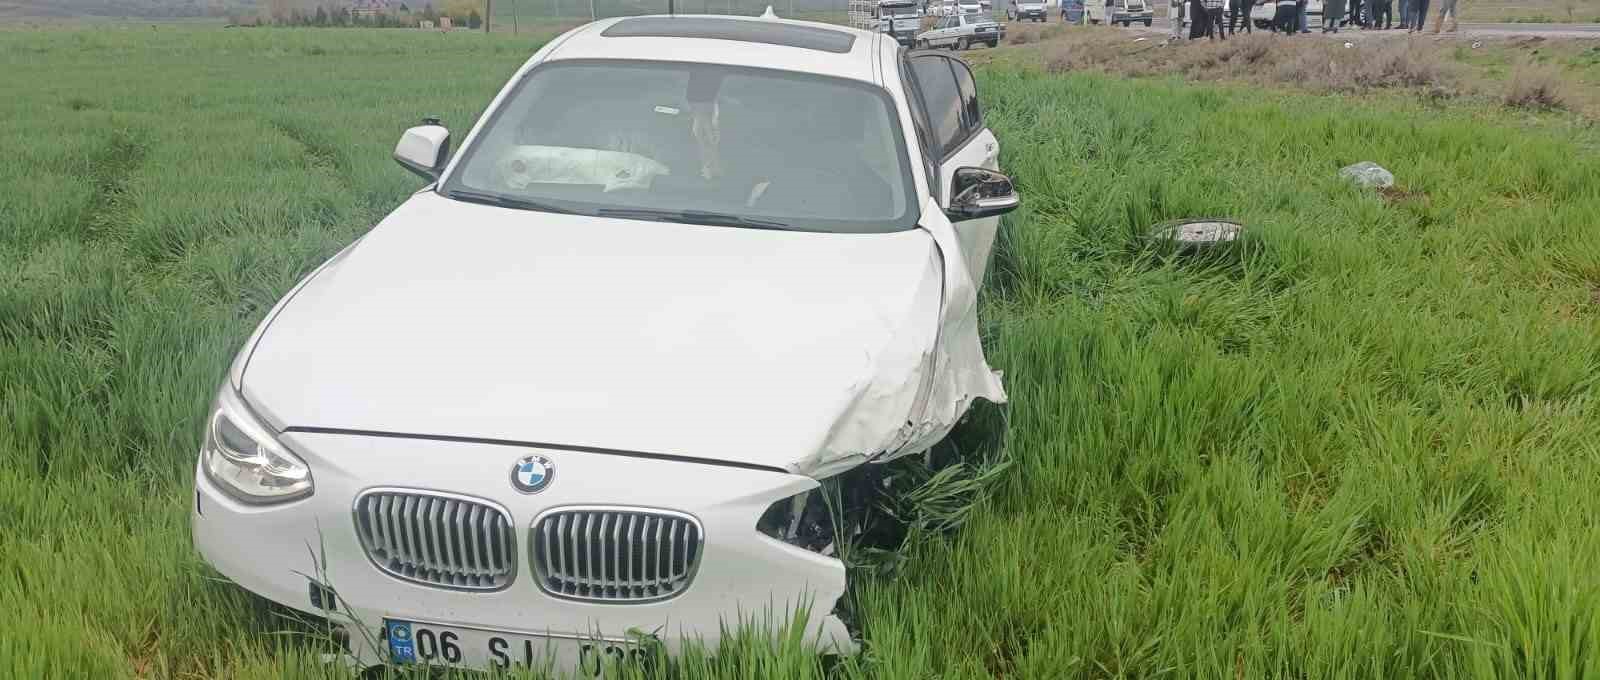 Konya’da hafif ticari araç ile otomobil çarpıştı: 7 yaralı
